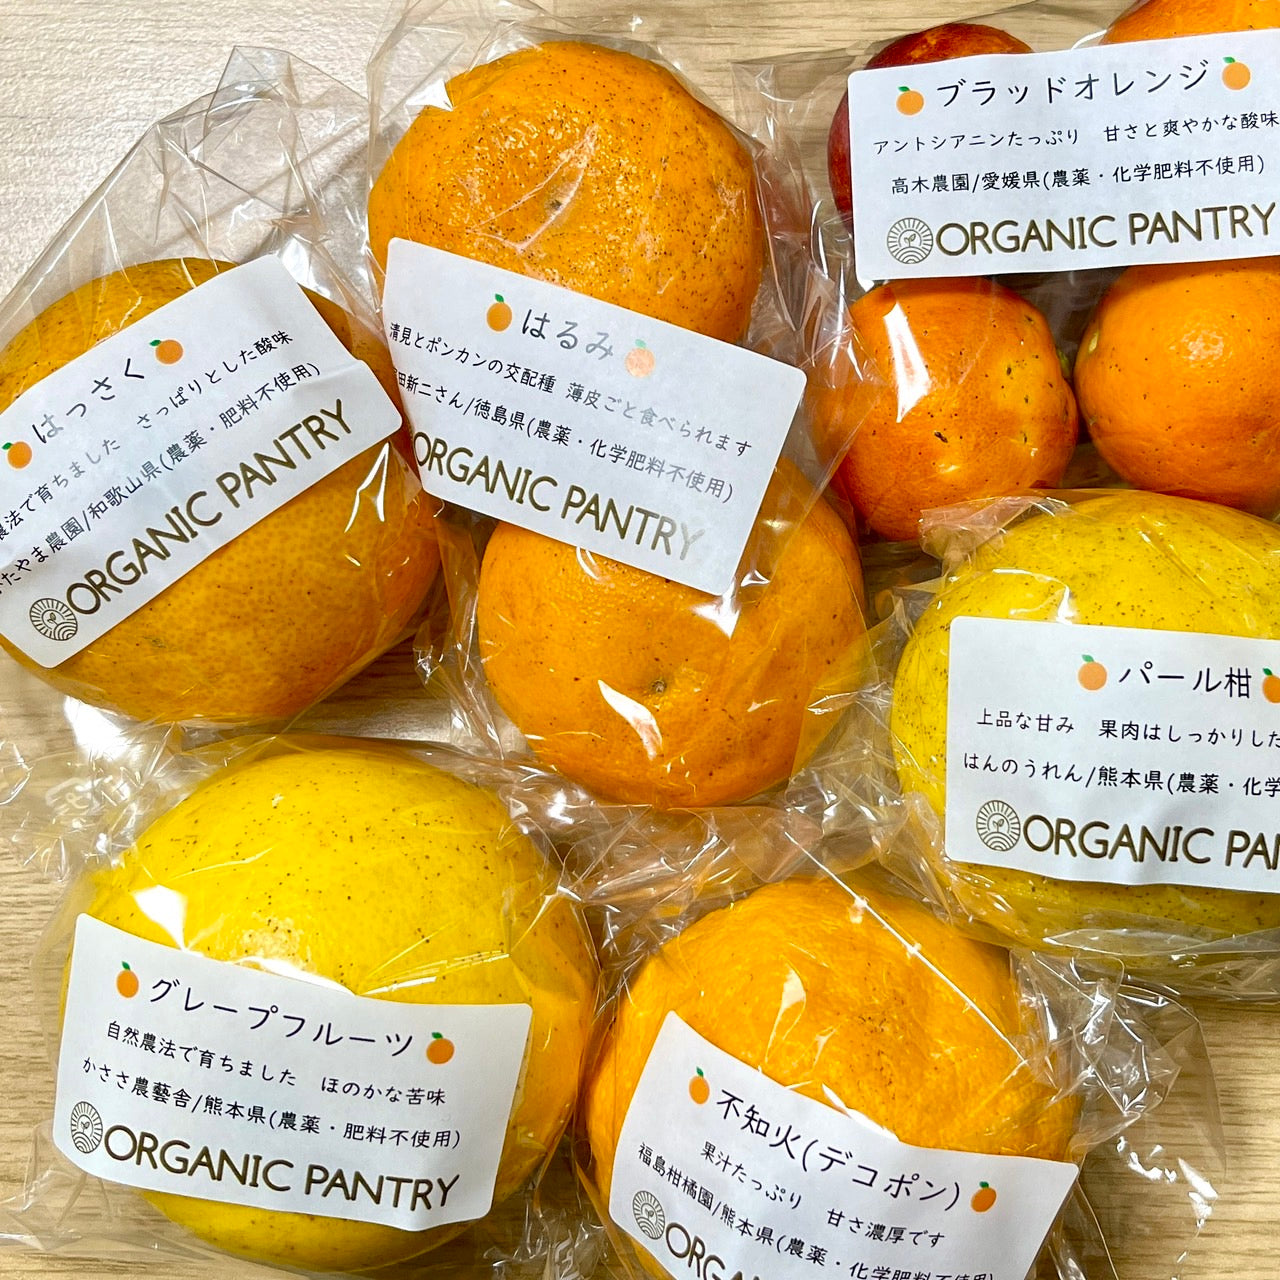 柑橘おまかせセット(2㎏) – Organic Pantry